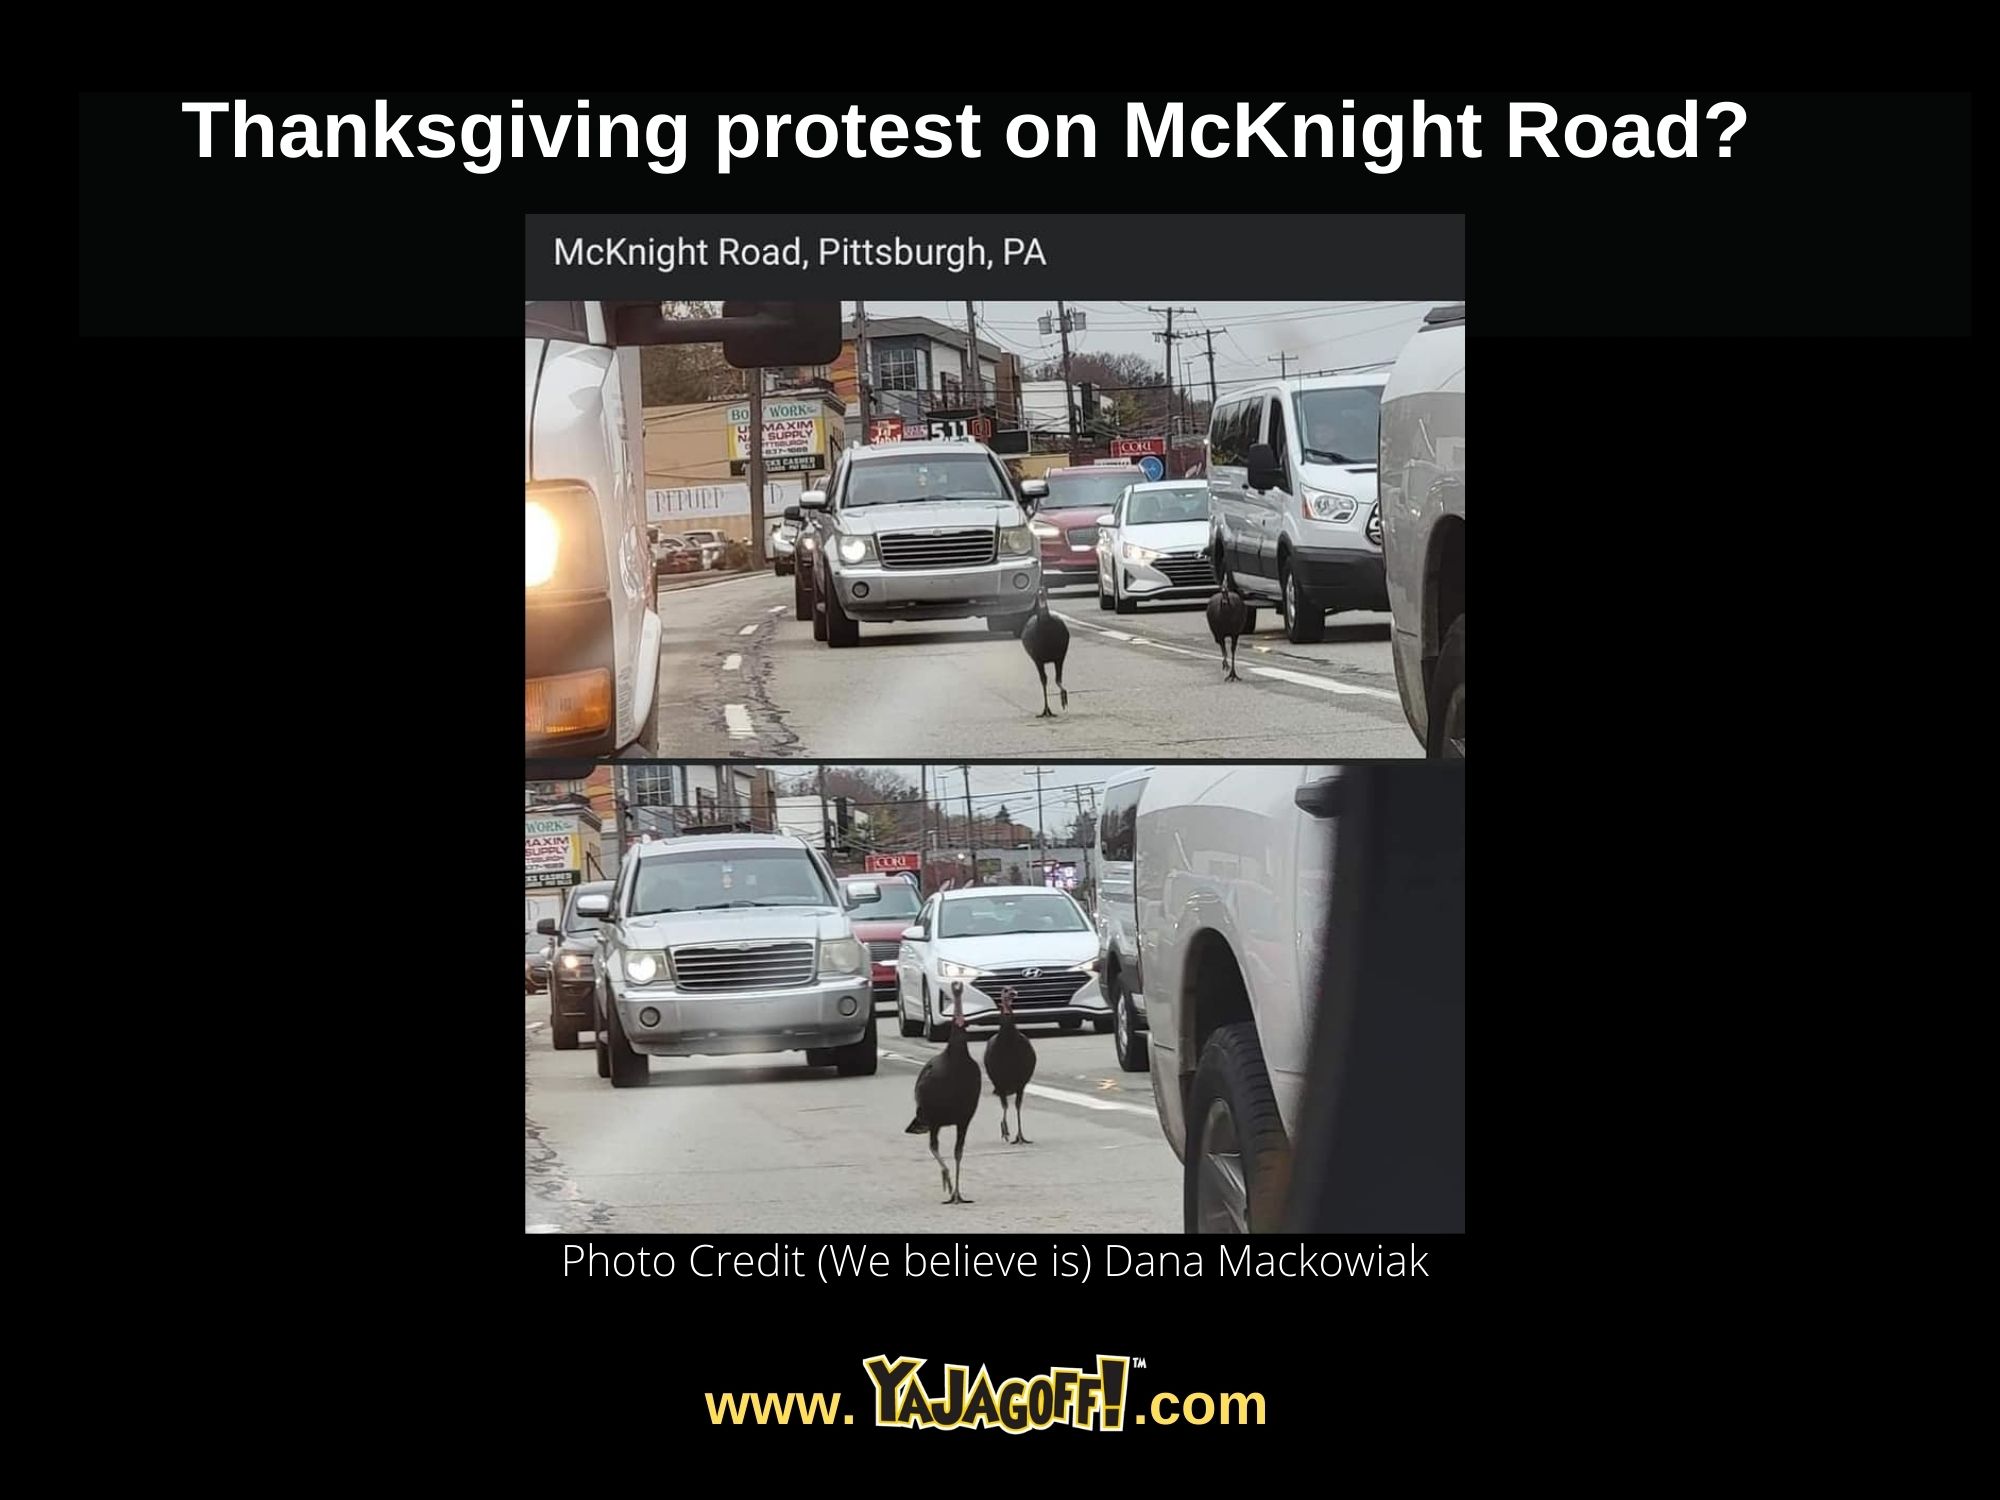 Turkeys on McKnight Road